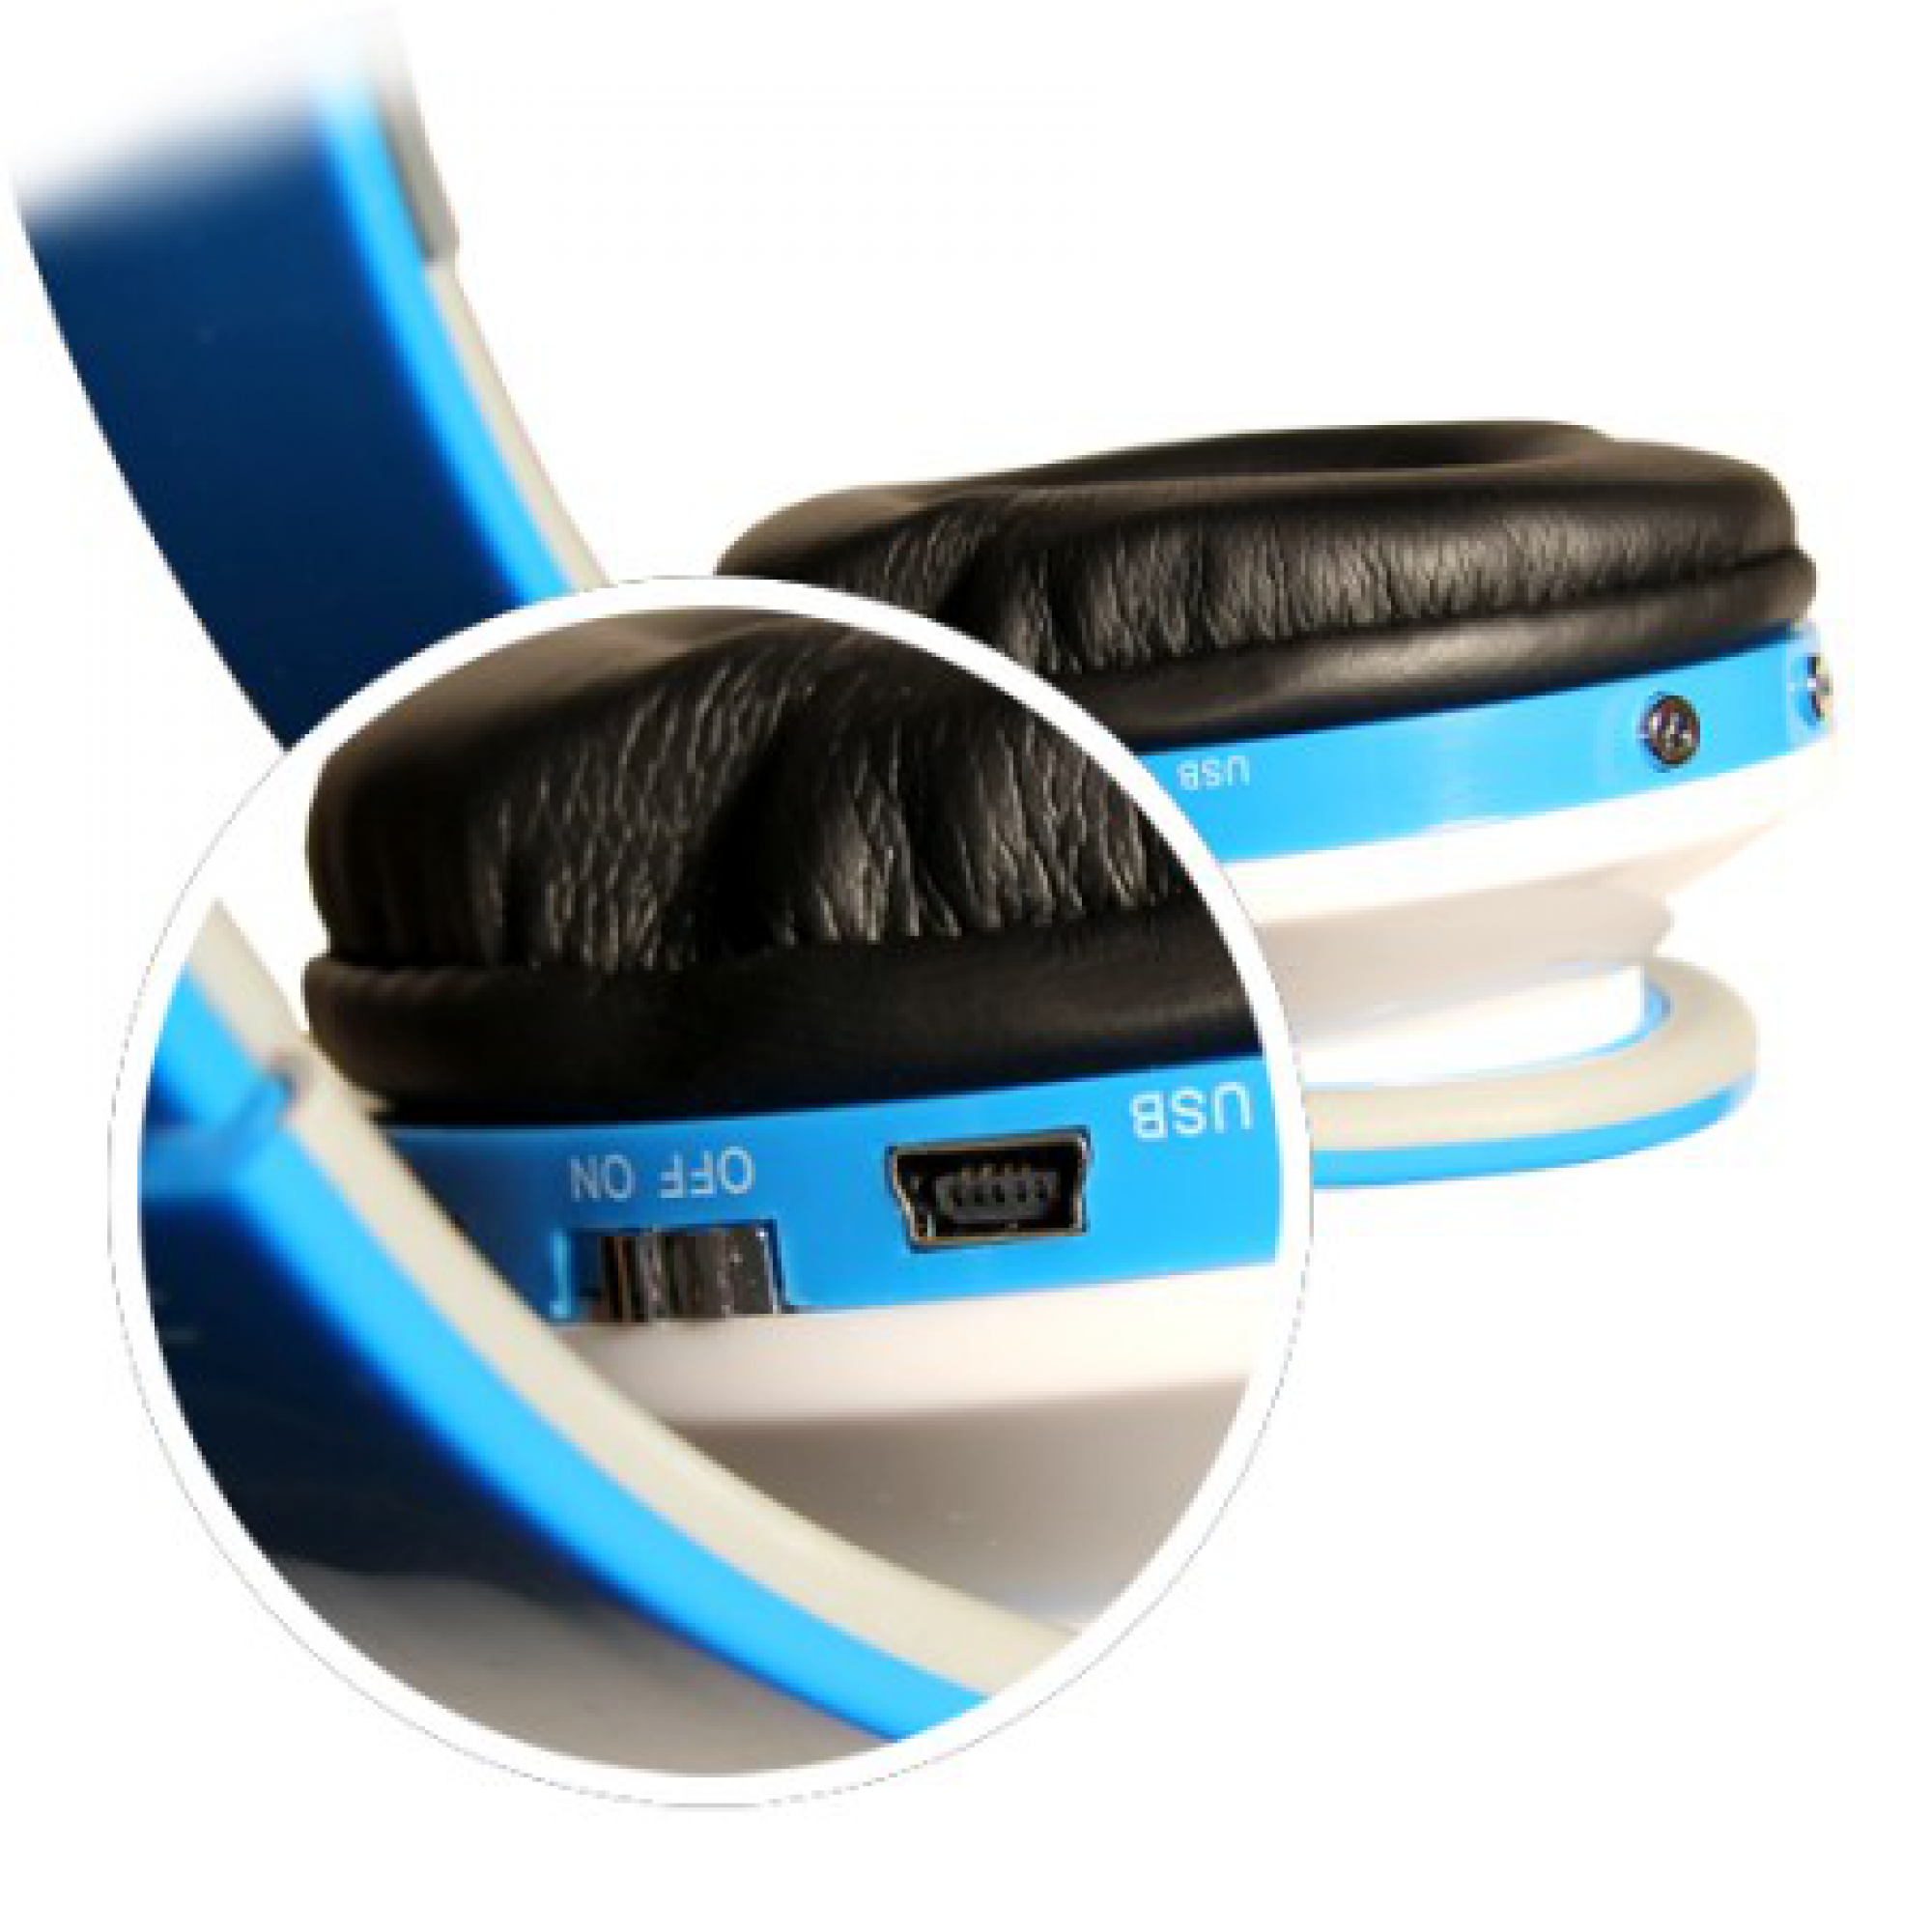 MP3 FM Навушники Havit HV-H99TF біло-синій